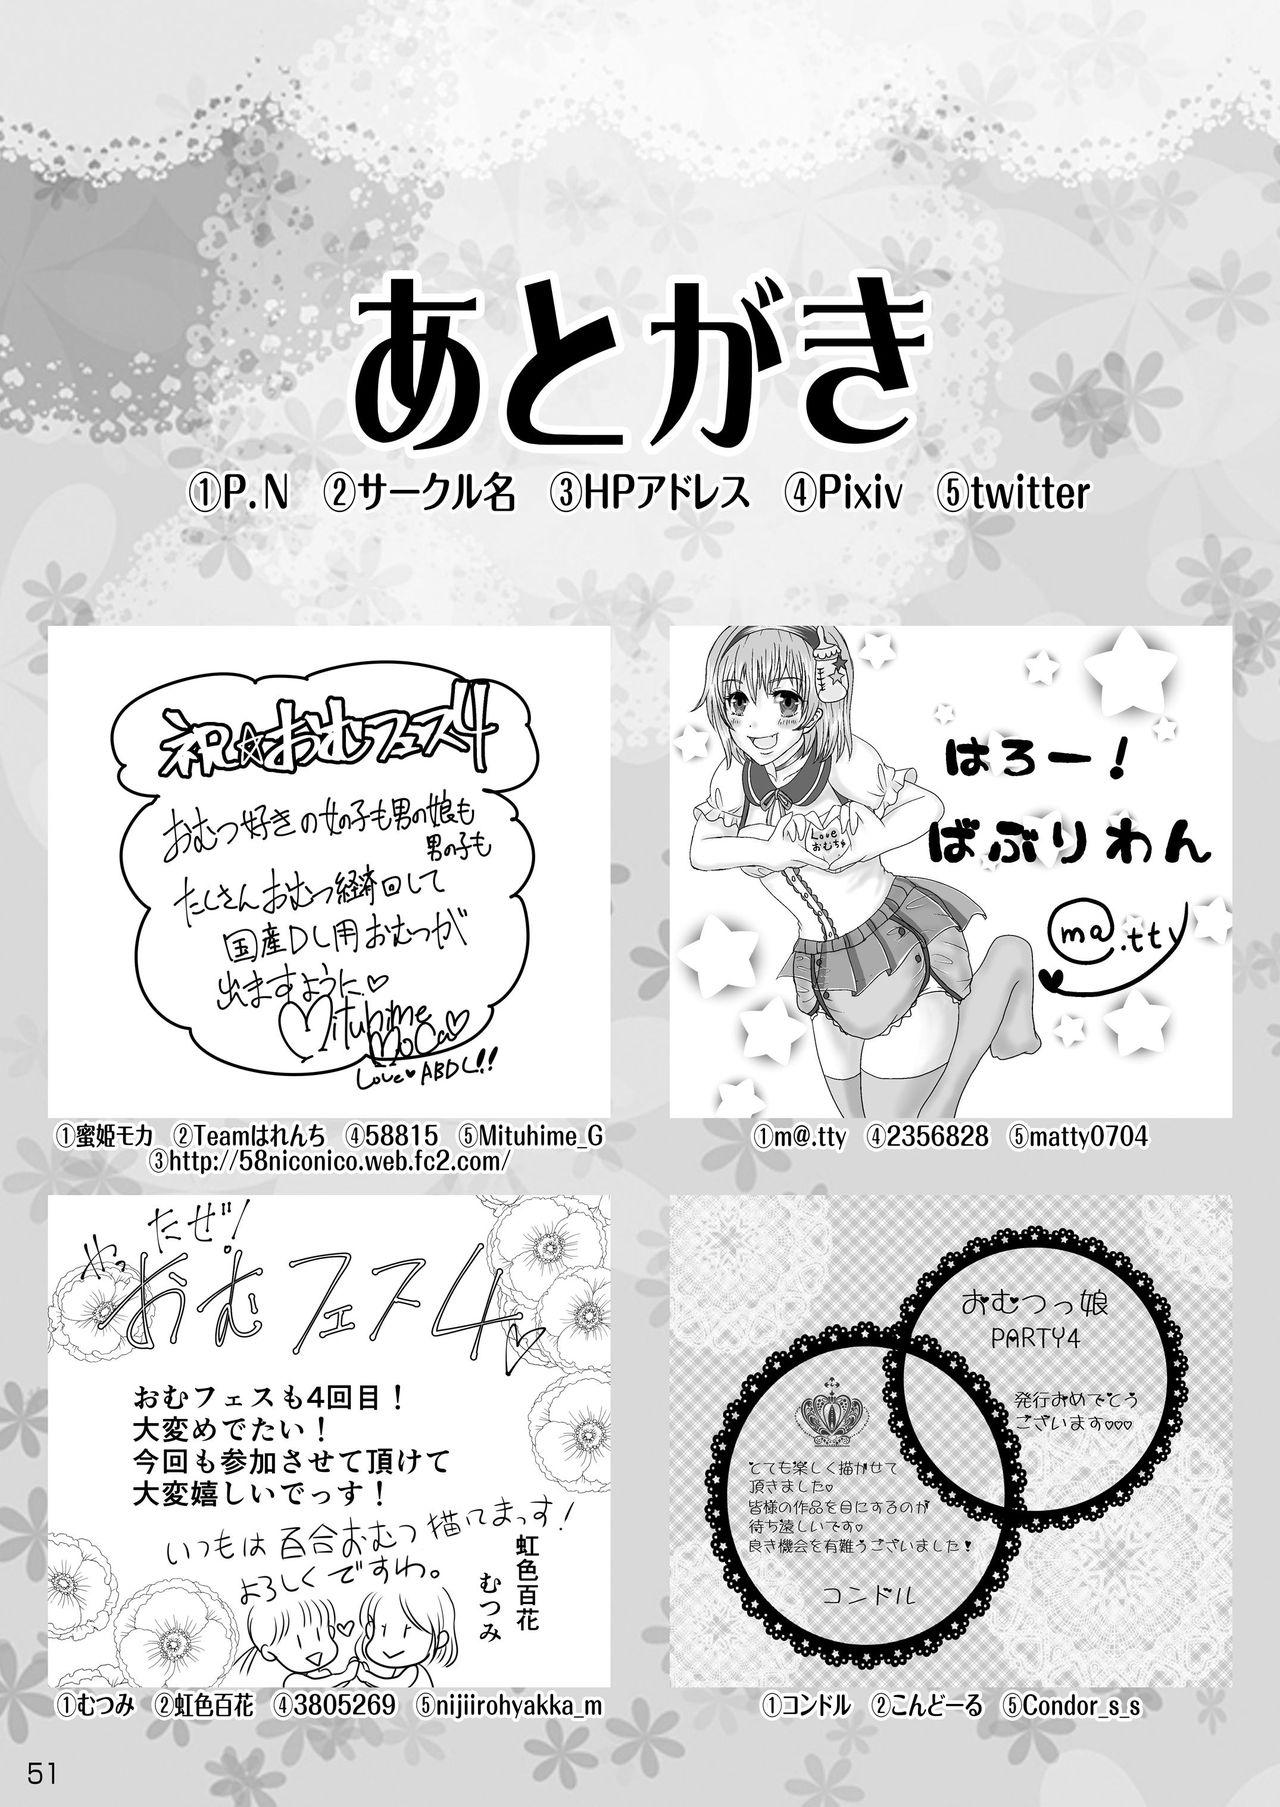 Omu☆Fes 4 Kaisai Kinen Goudoushi "Omutsukko PARTY! 4" 50